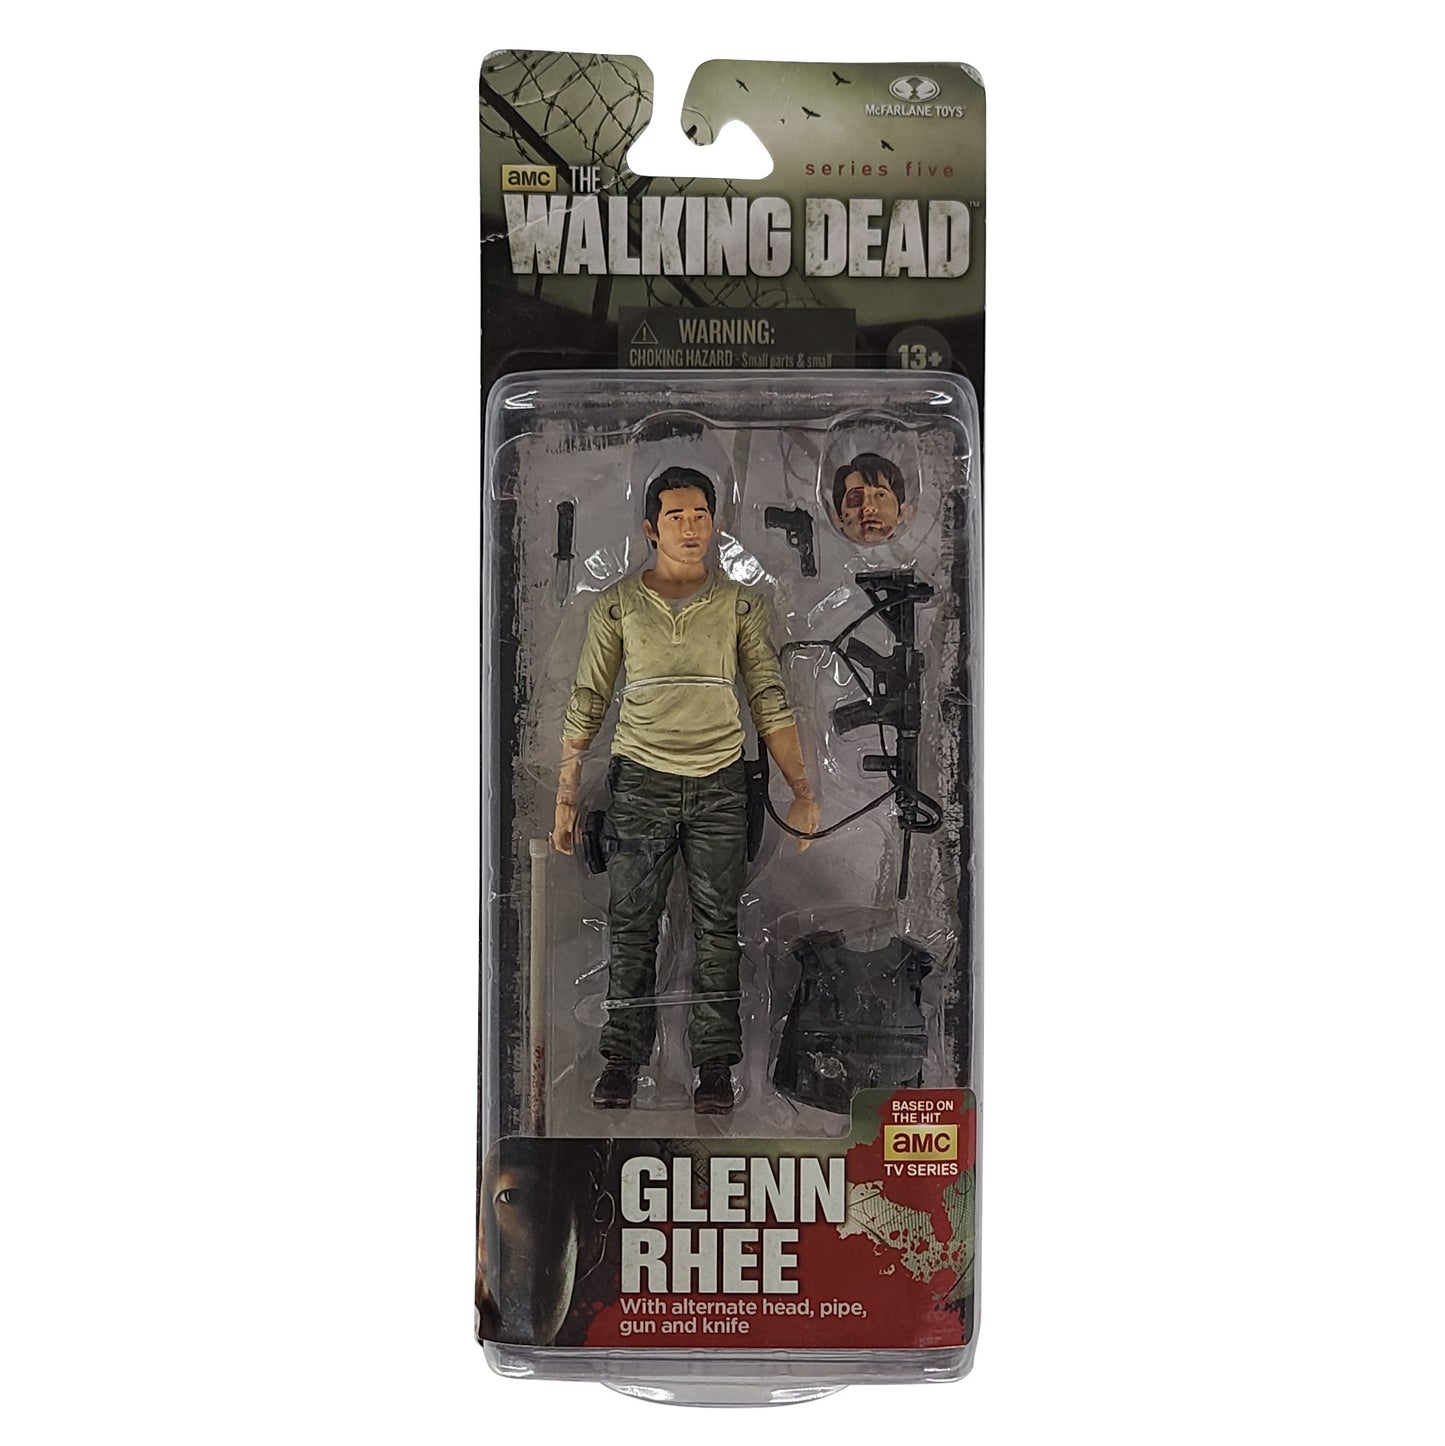 The Walking Dead 'Glenn Rhee' Action Figure